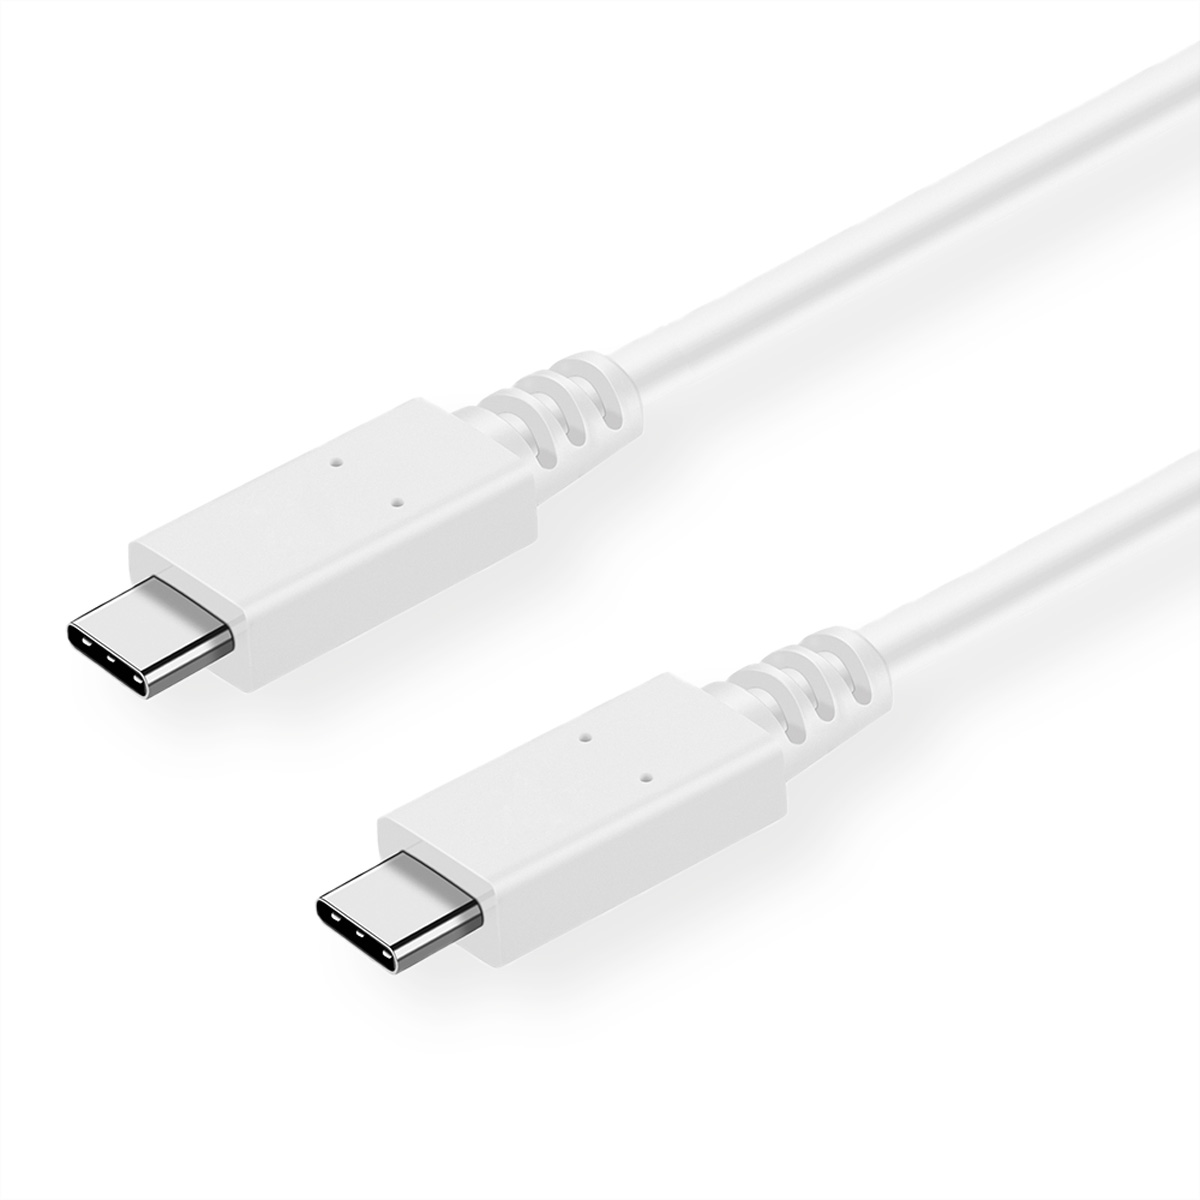 Kabel, VALUE 3.2 C-C, USB ST/ST Kabel USB 2 3.2 Gen